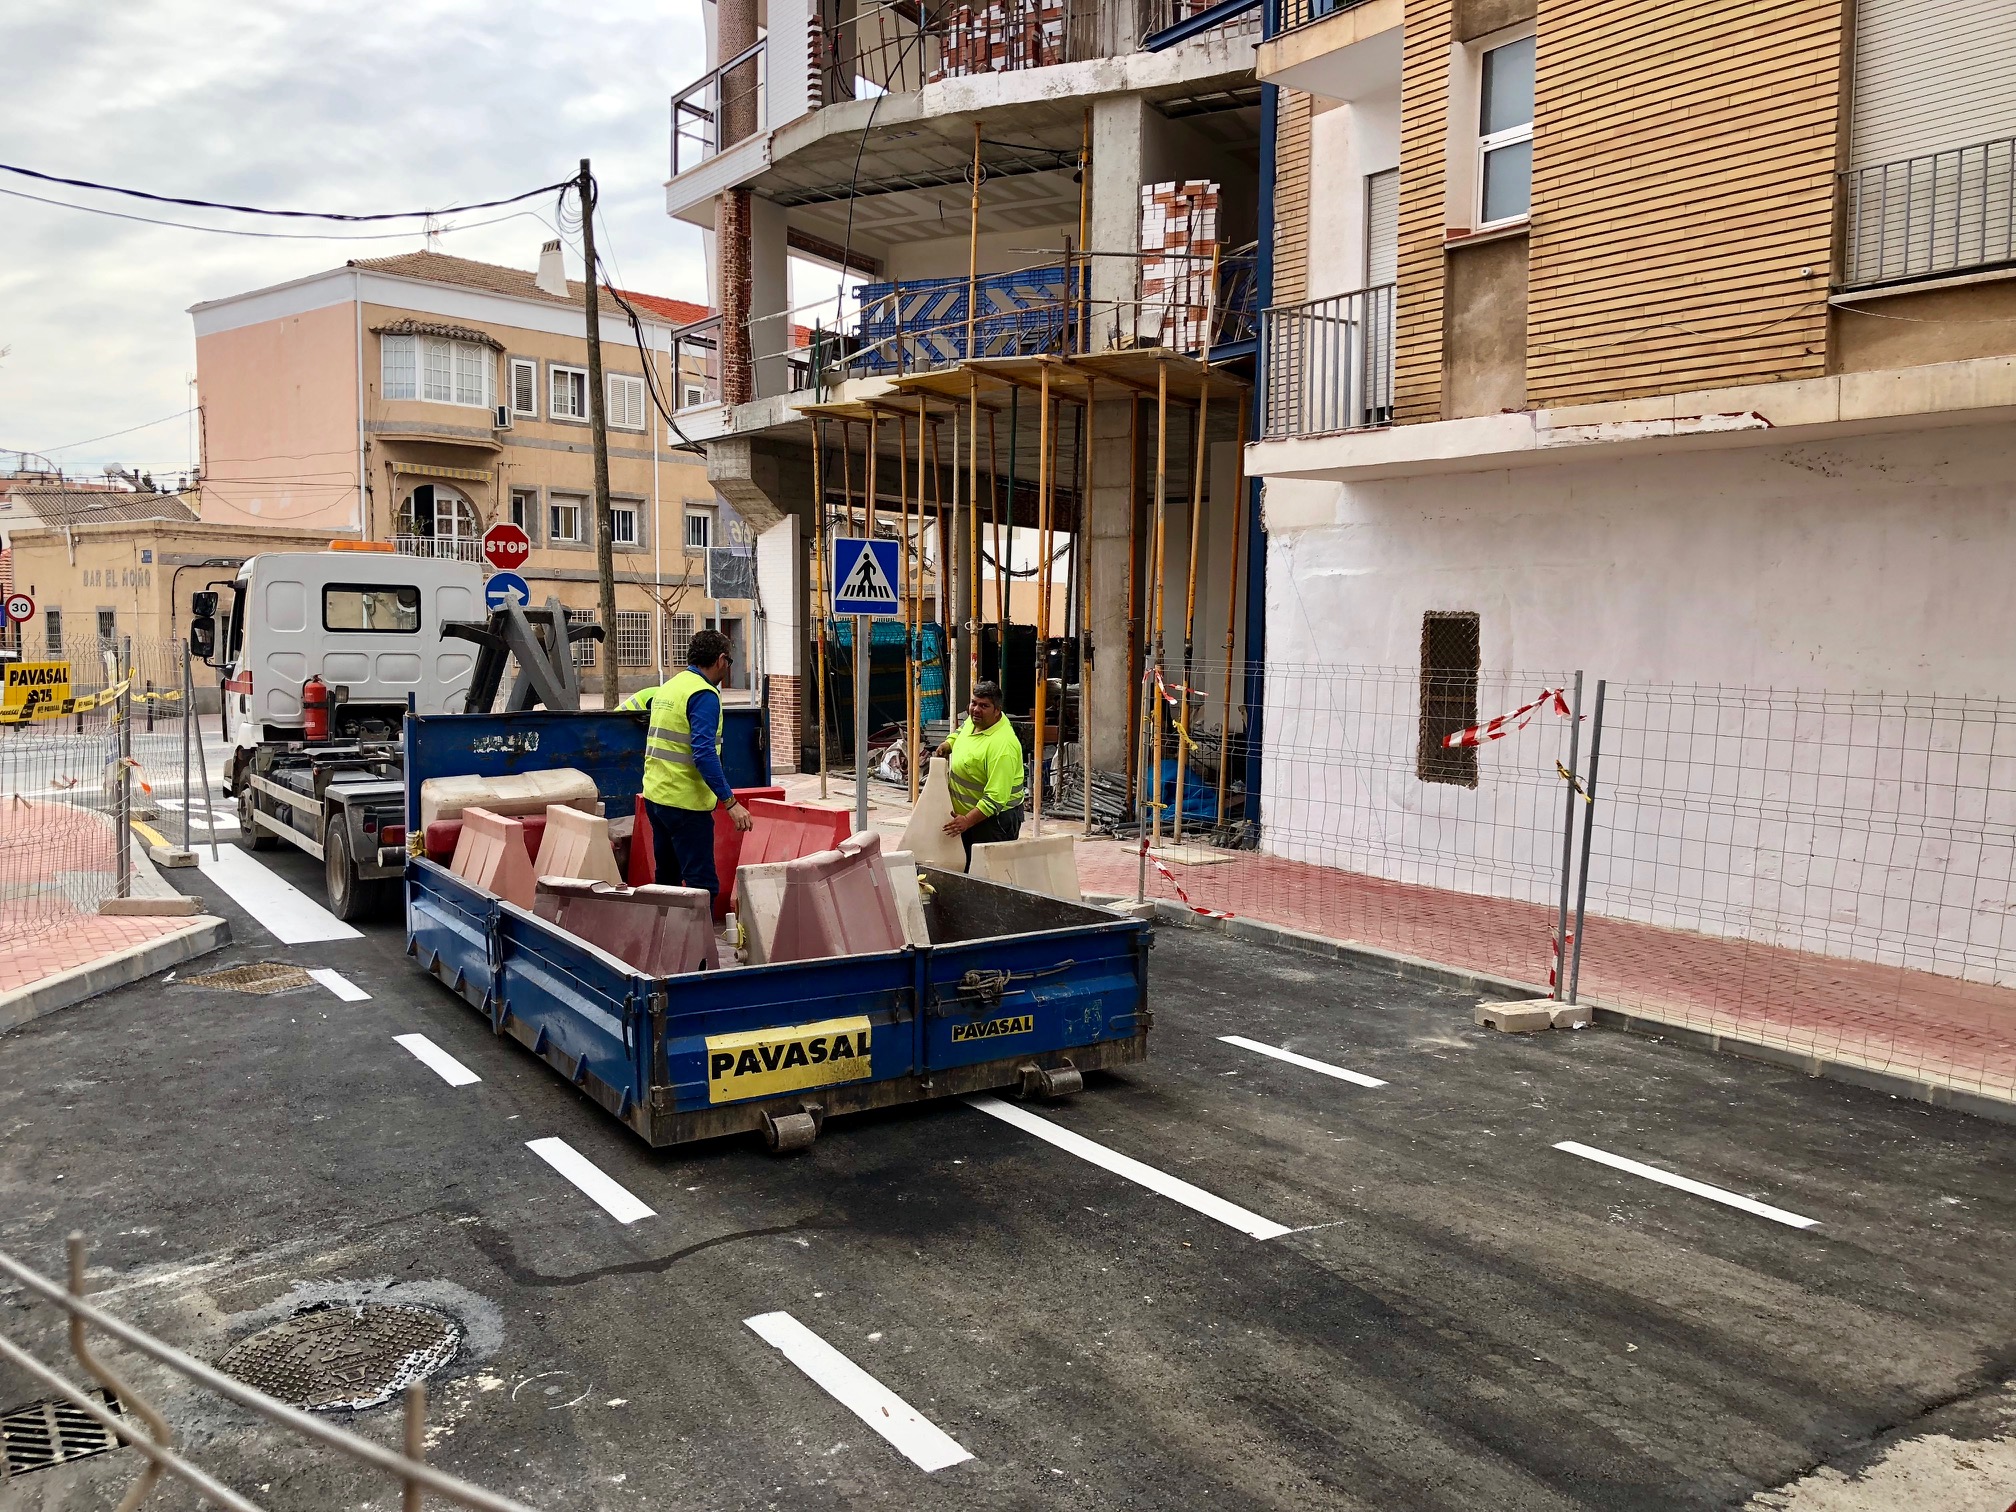 Mañana se abre al tráfico la nueva conexión entre el barrio de El Carmen y el Infante